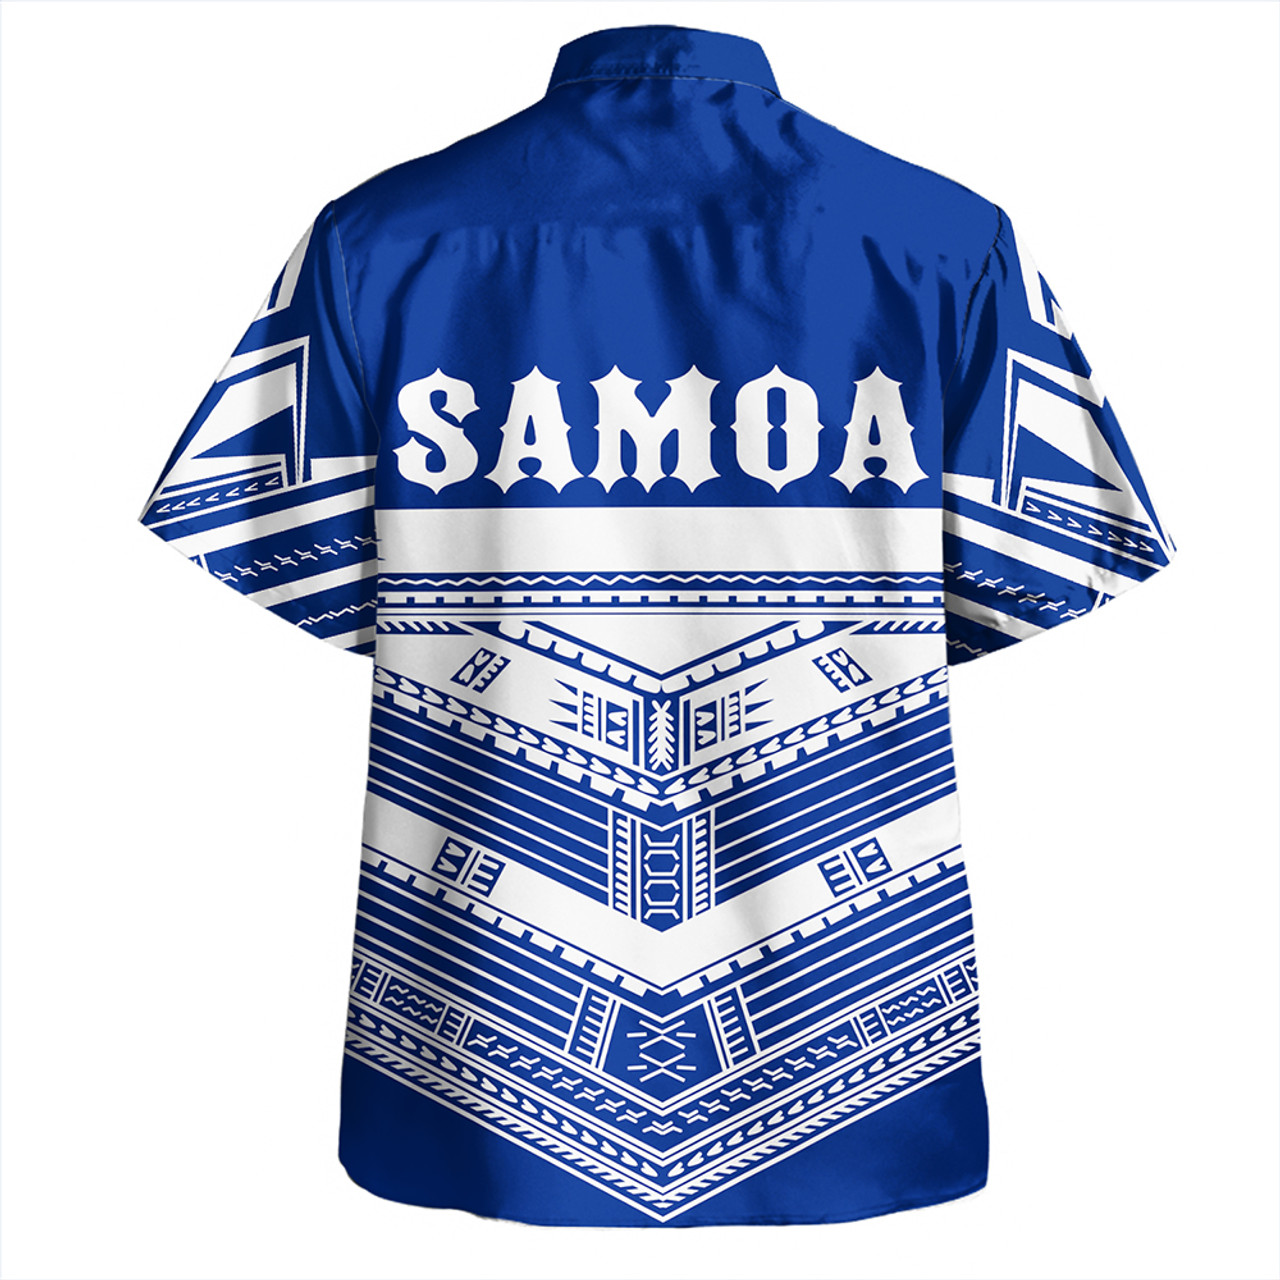 The Samoan Chief Hawaiian Shirt Blue